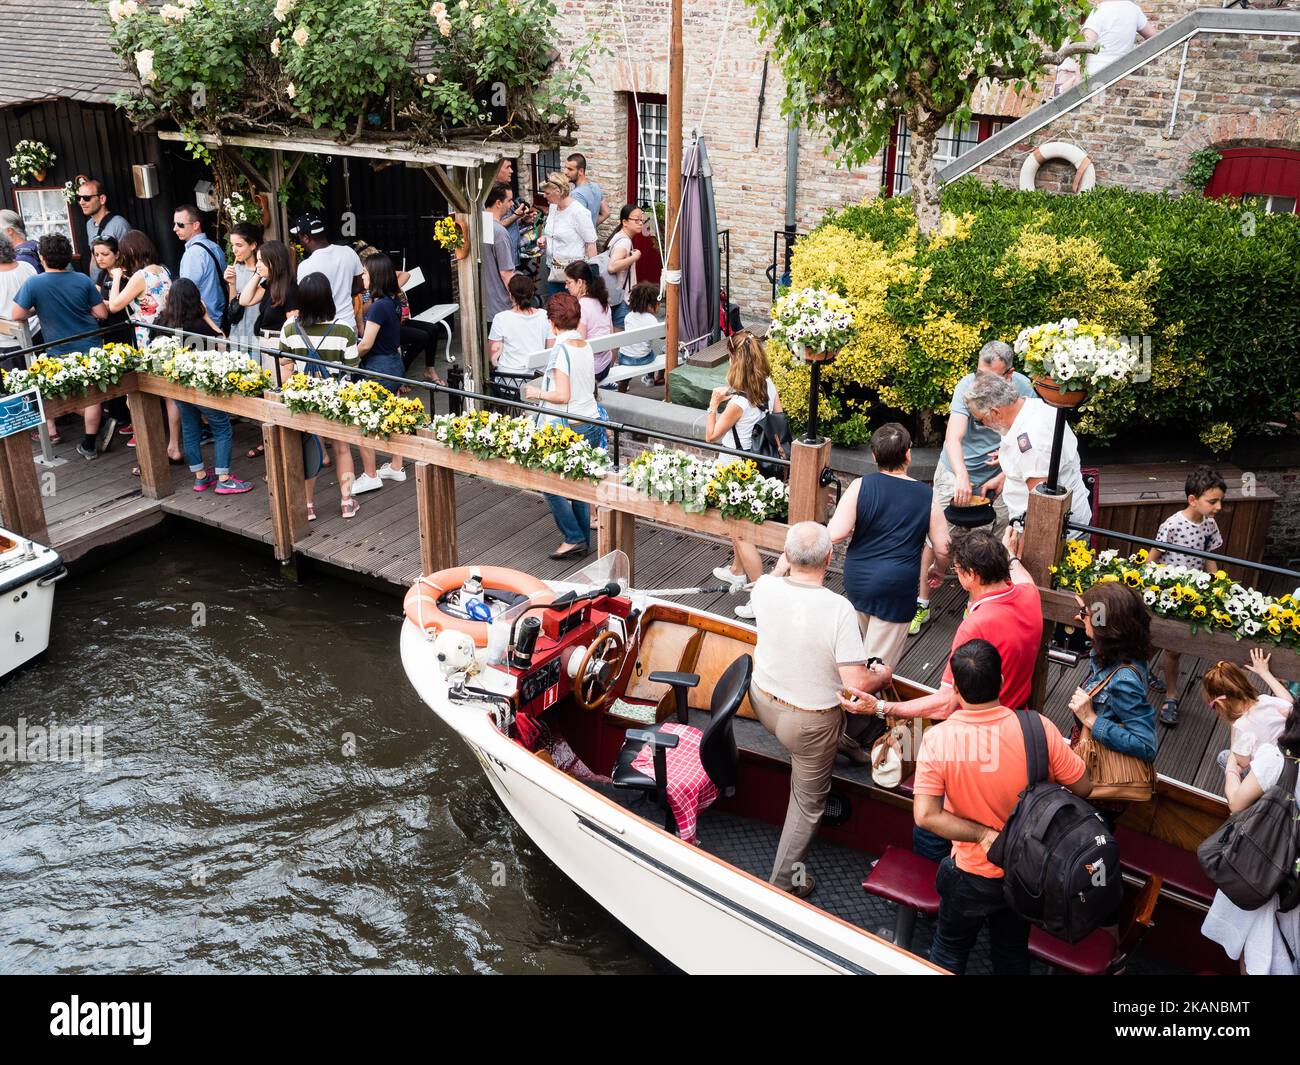 La gente partecipa a un tour in barca sul canale di Gand a Bruges, in Belgio, il 27 maggio 2017. Durante uno dei giorni più caldi dell'anno, Bruges è stata la destinazione scelta da migliaia di turisti provenienti da tutto il mondo. Questa è la capitale e la città più grande della provincia delle Fiandre Occidentali nella regione fiamminga del Belgio, nel nord-ovest del paese. Essendo Bruges un'enorme destinazione turistica, i turisti hanno molte scelte per godersi la città, come escursioni in carrozza trainata da cavalli, tour dei canali in barca o semplicemente passeggiate nel centro storico della città. (Foto di Romy Arroyo Fernandez/NurPhoto) *** Please use Cre Foto Stock